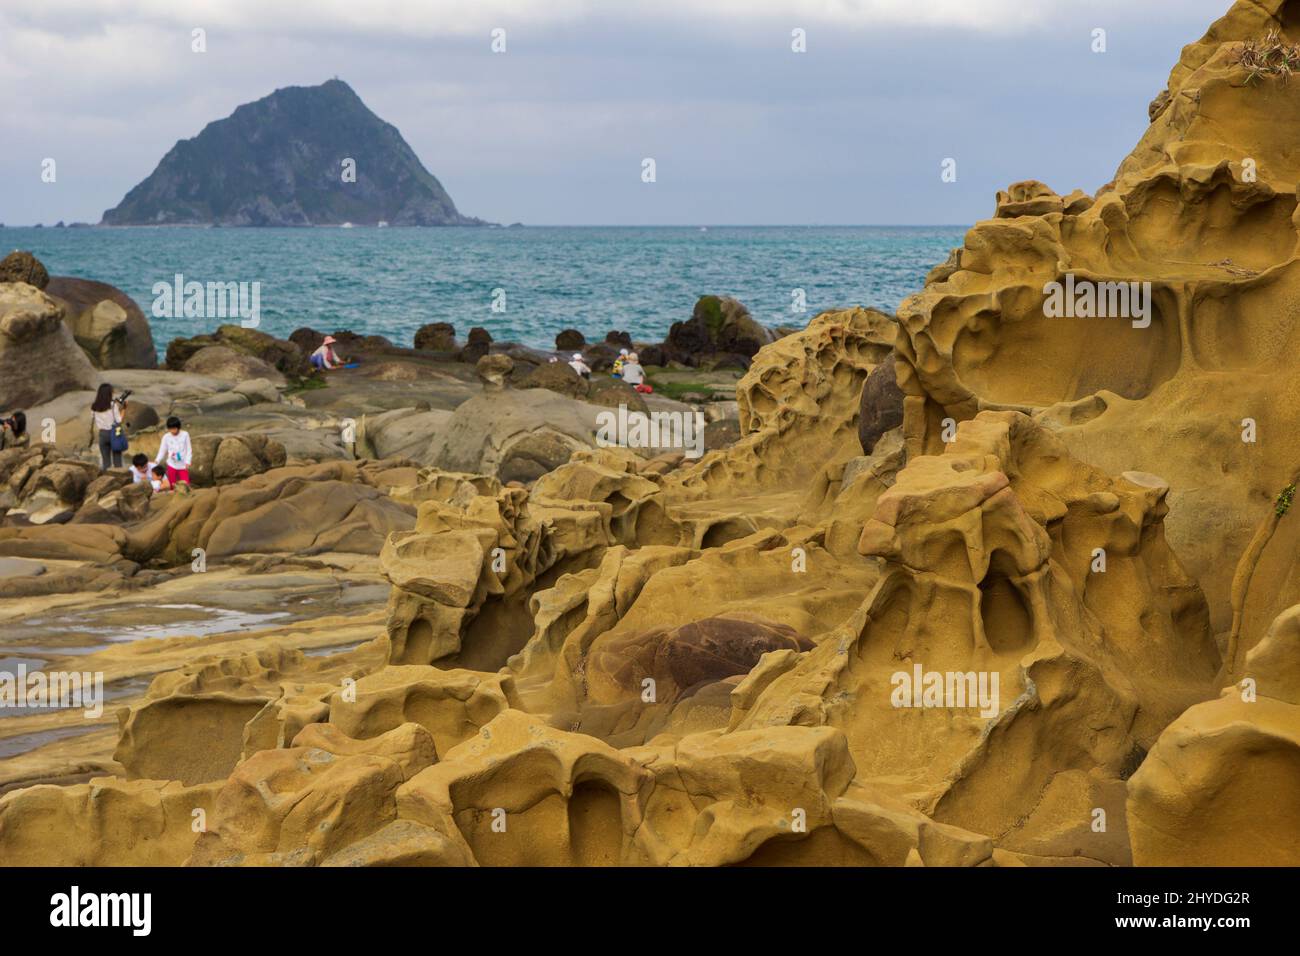 Persone al bizzarro terreno roccioso e formazioni rocciose al Parco dell'Isola di Heping (sperando) (noto anche come Parco dell'Isola della Pace) a Keelung, Taiwan. Foto Stock